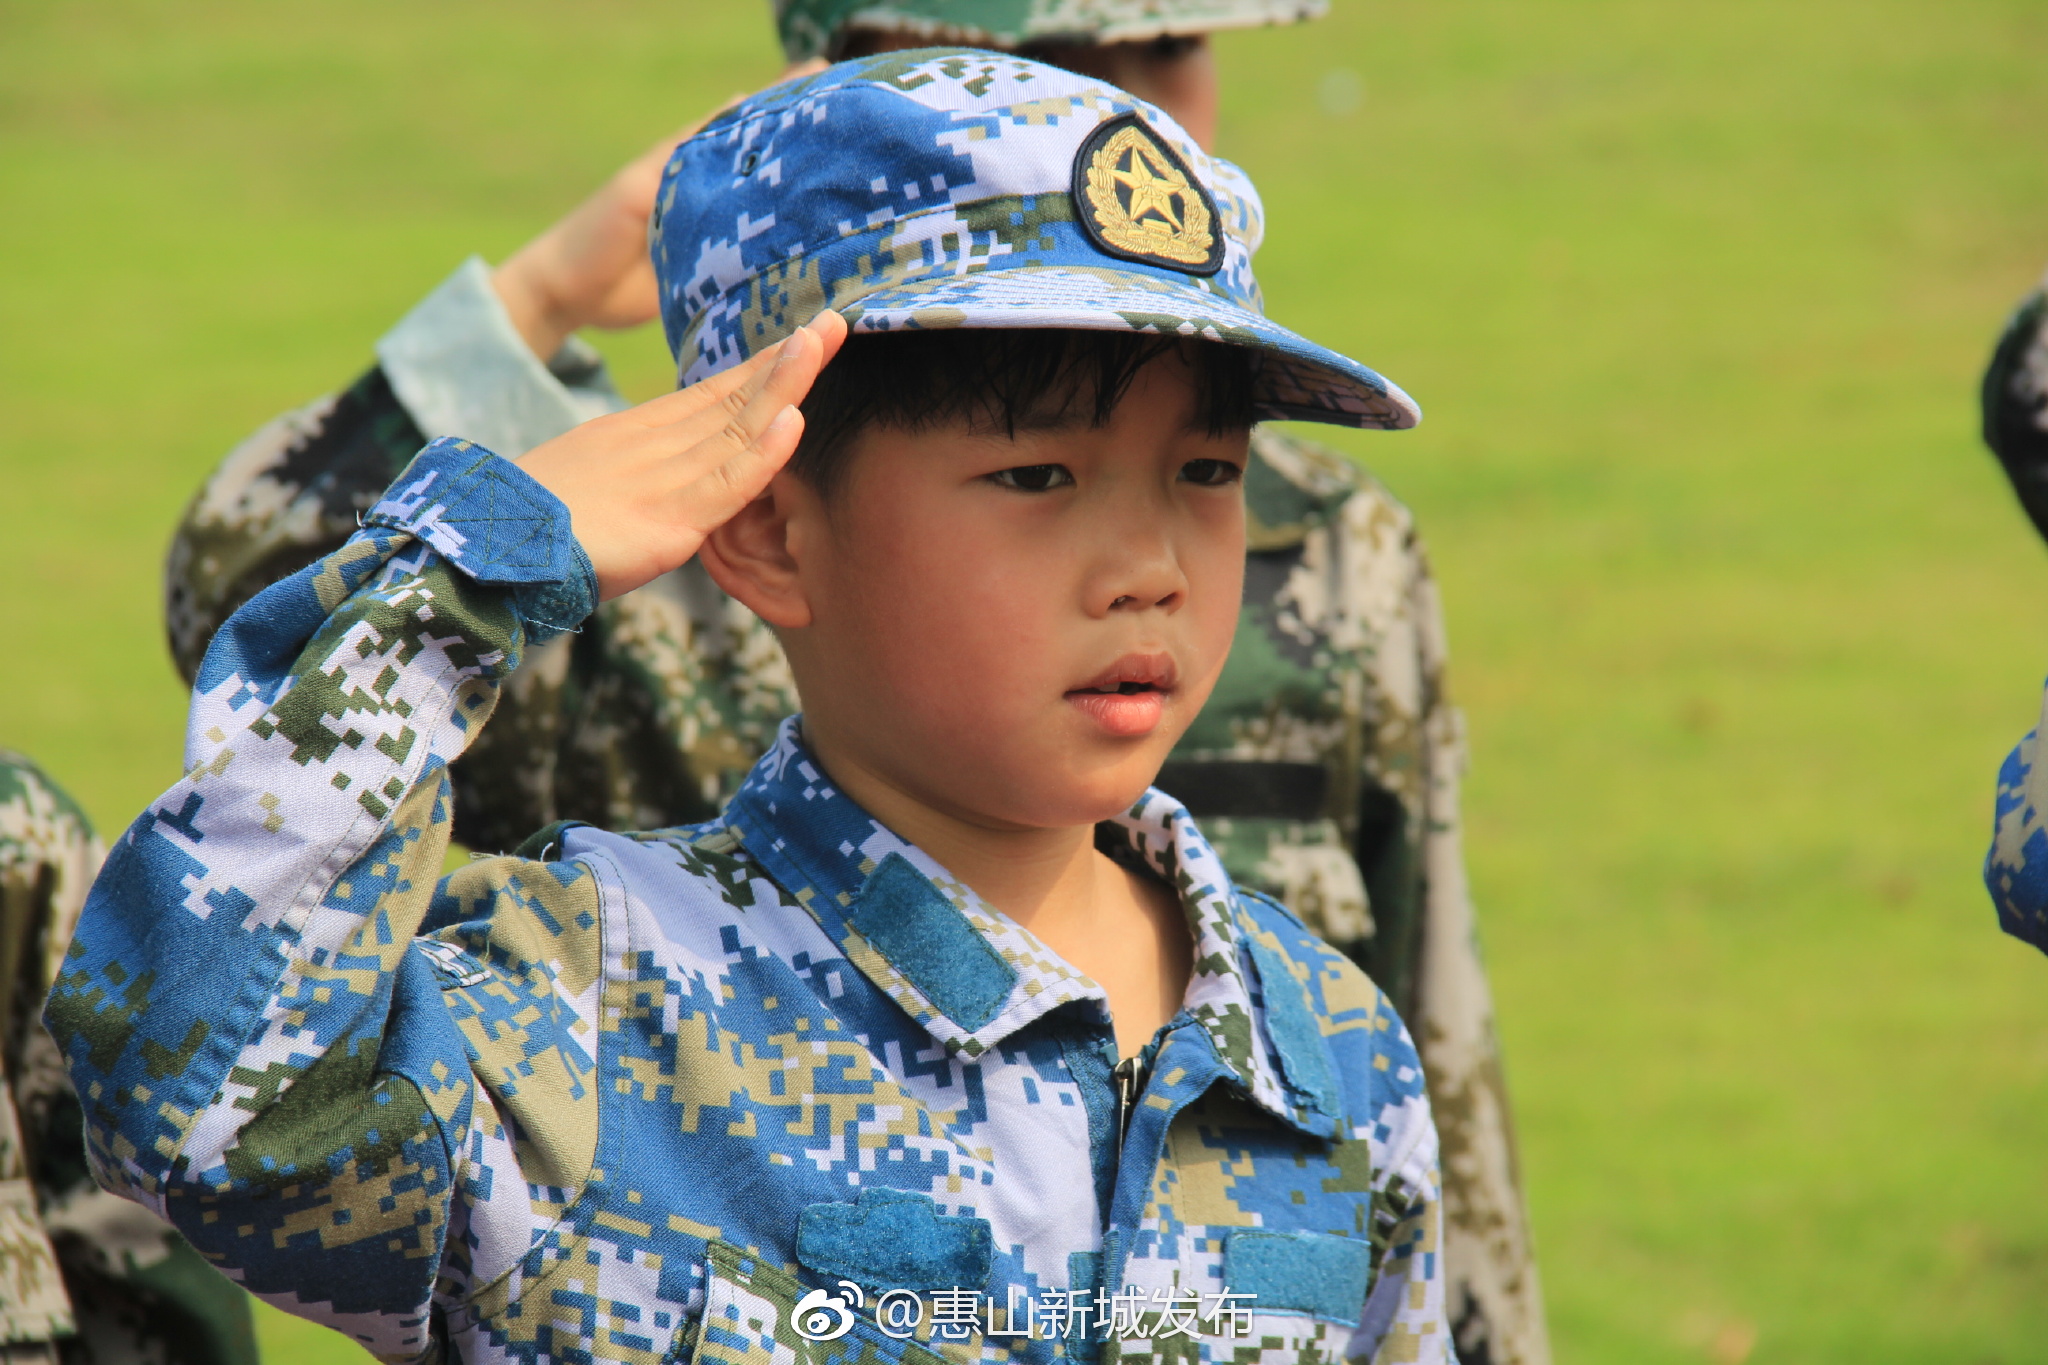 惠城社区:开展国防教育军事亲子营活动